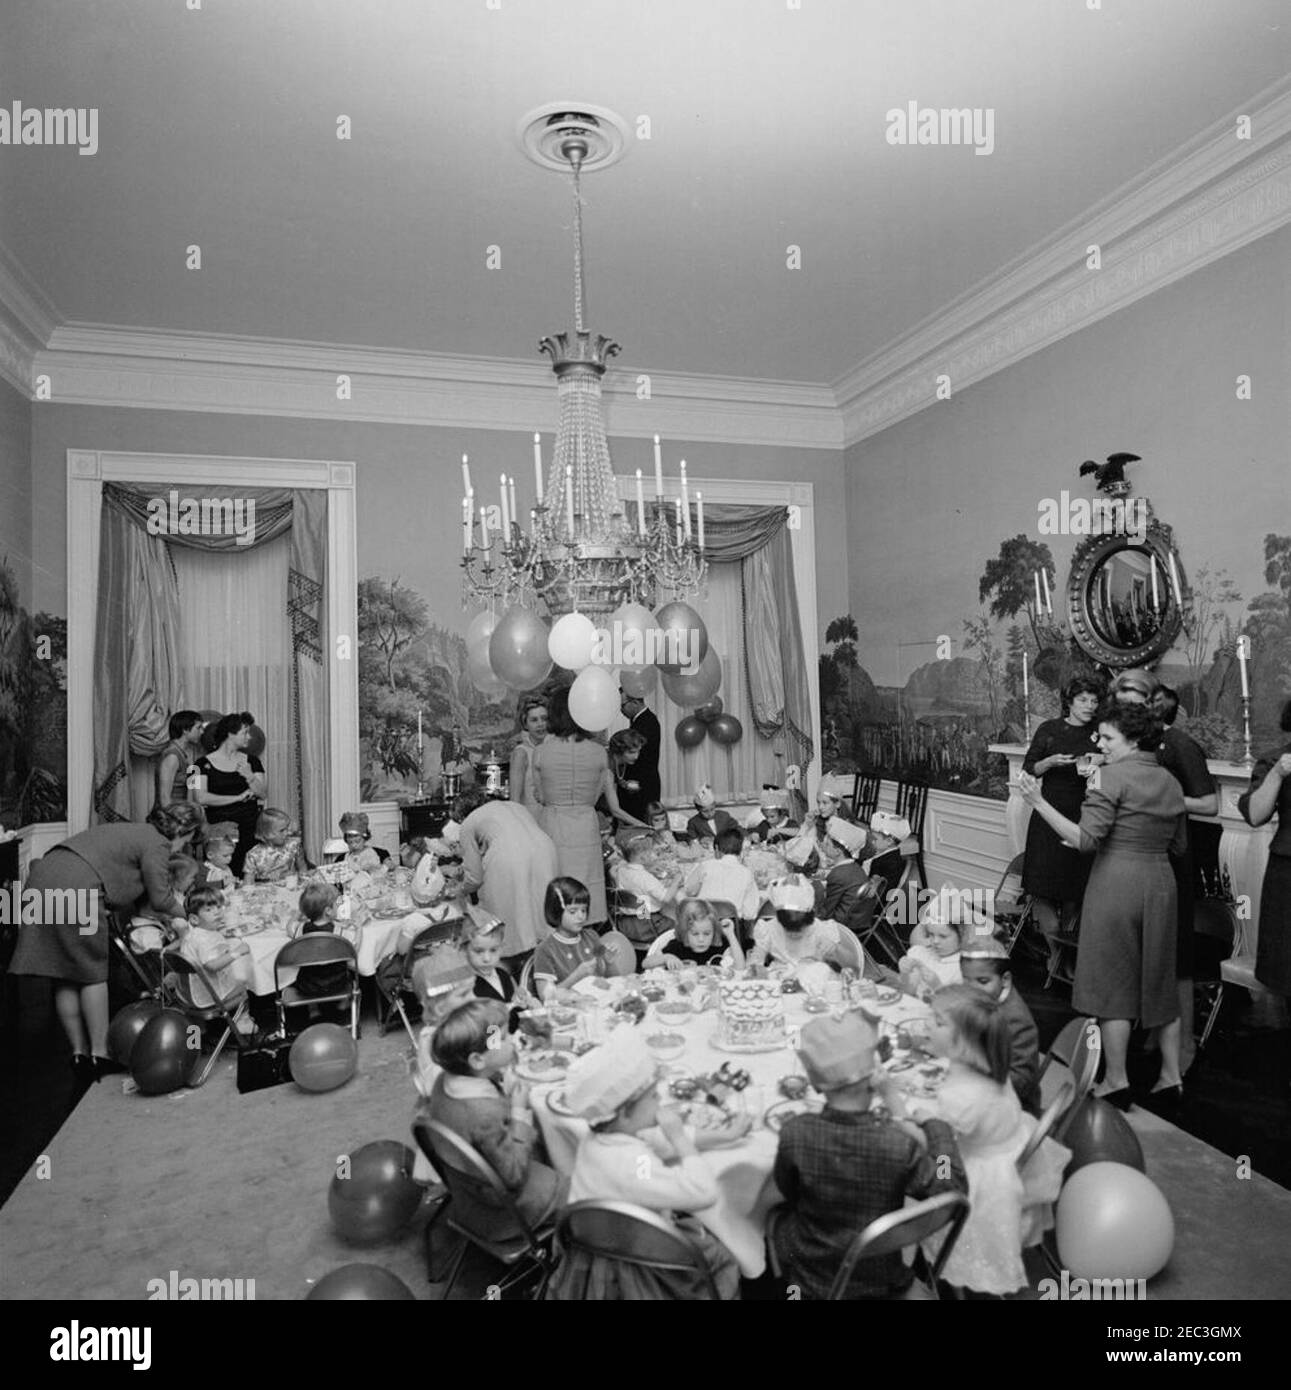 Geburtstagsfeier für Caroline Kennedy und John F. Kennedy, Jr.. Kleine Kinder sitzen an Tischen im Presidentu2019s Dining Room (Residenz) des Weißen Hauses, Washington, D.C. während einer gemeinsamen Geburtstagsfeier für Caroline Kennedy und John F. Kennedy, Jr.; First Lady Jacqueline Kennedy (zurück zur Kamera) steht in der Mitte im Hintergrund. Caroline (rechts) sitzt am Tisch im Vordergrund mit Maria Shriver (in der Mitte sitzend, mit Lollipop) und Avery Hatcher, Sohn von Associate Press Secretary, Andrew T. Hatcher (rechts sitzend von Caroline, teilweise versteckt); John, Jr. (links, mit Blick auf die Kamera), sitzt am Tisch Stockfoto